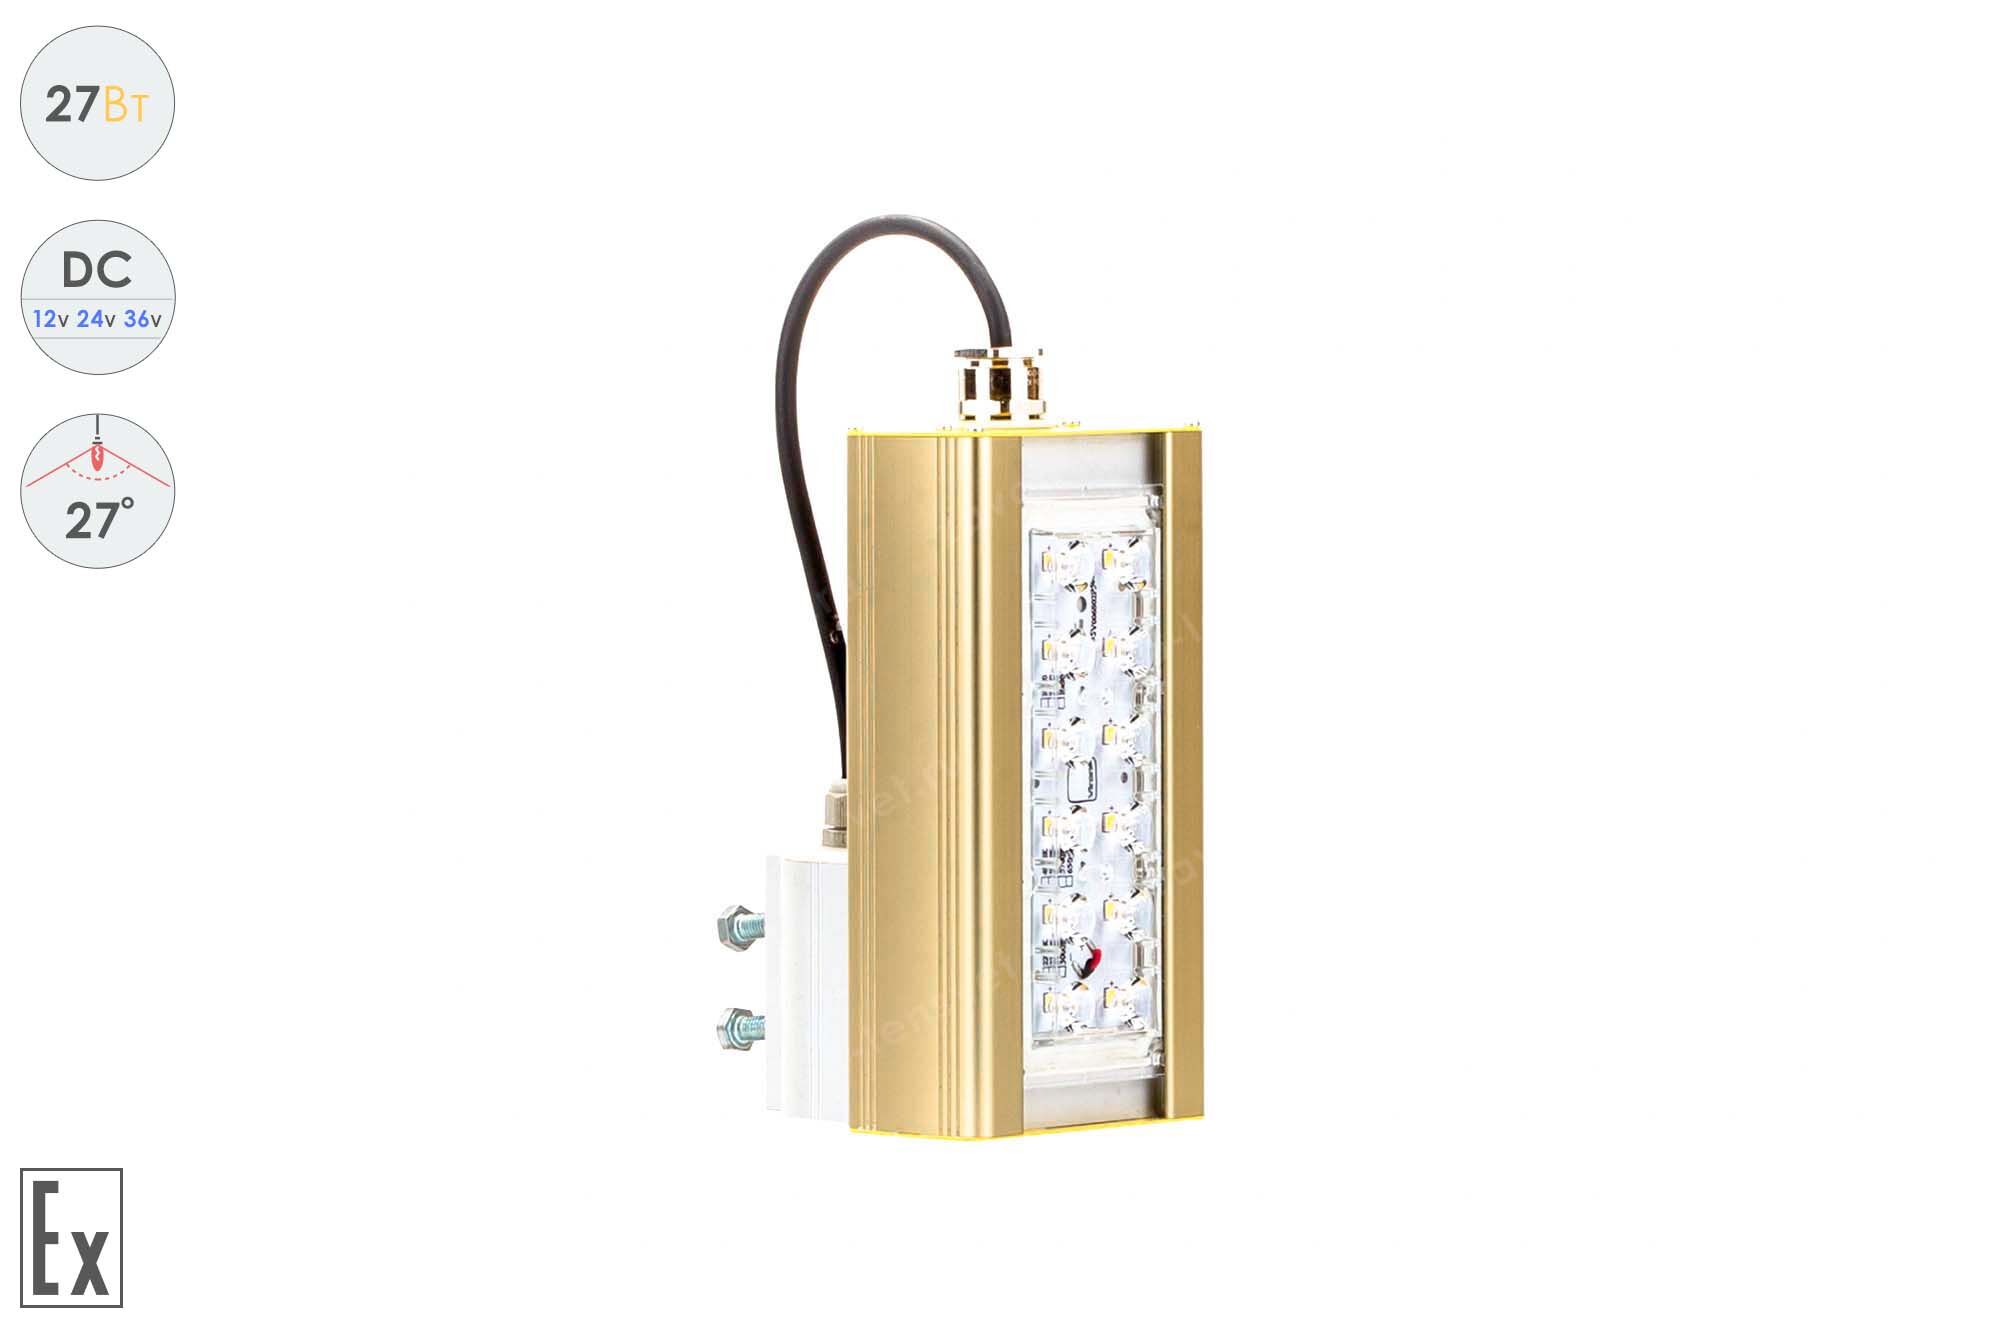 Светодиодный светильник Низковольтный Прожектор Взрывозащищенный GOLD, консоль K-1, 27 Вт, 27°